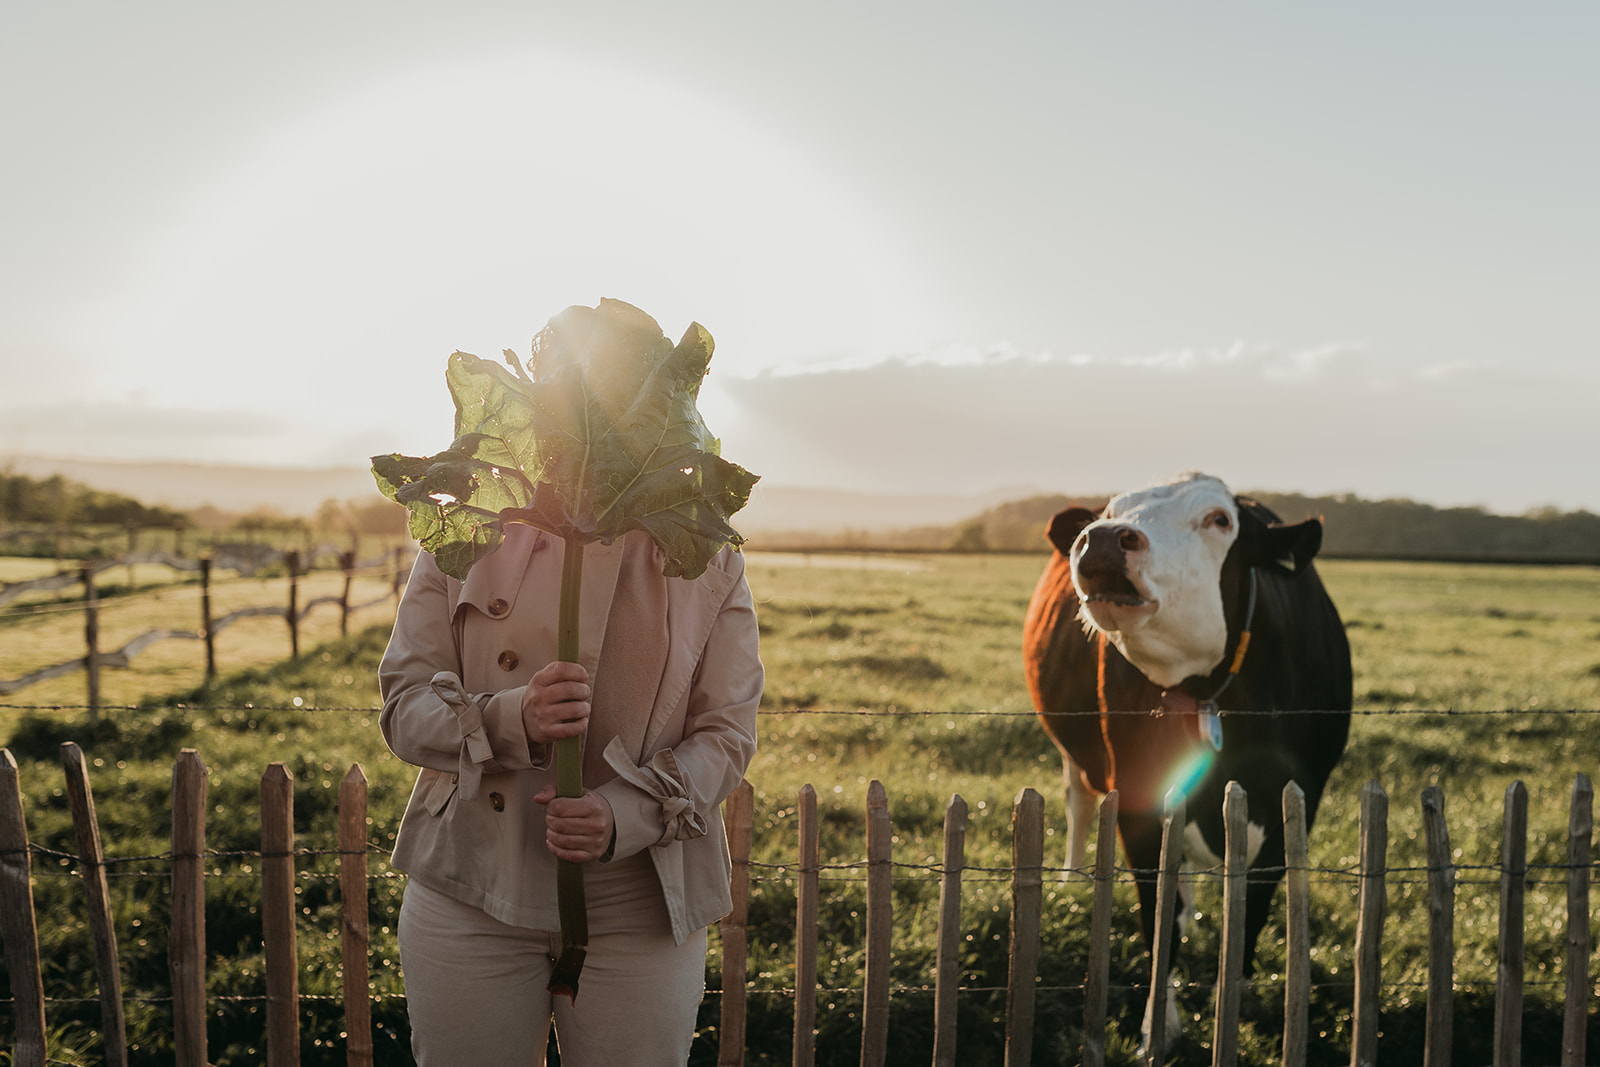 Persoon met blad voor gezicht naast een koe in de wei